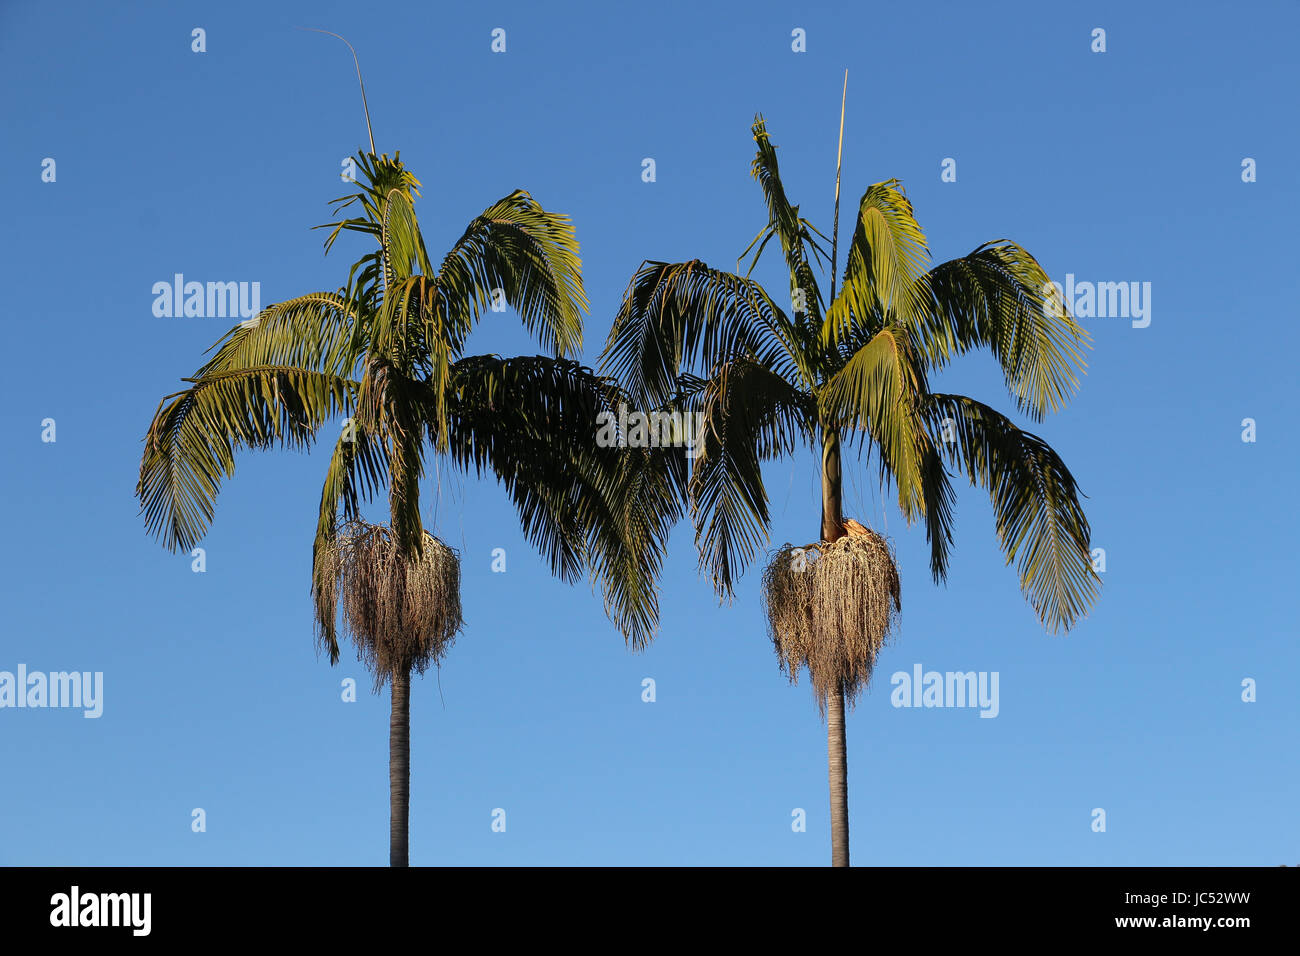 Zwei Palmen mit grünen Blätter und Blütenstände gegen einen blauen Himmel Blick wie Spiegelbilder oder eineiige Zwillinge. Stockfoto